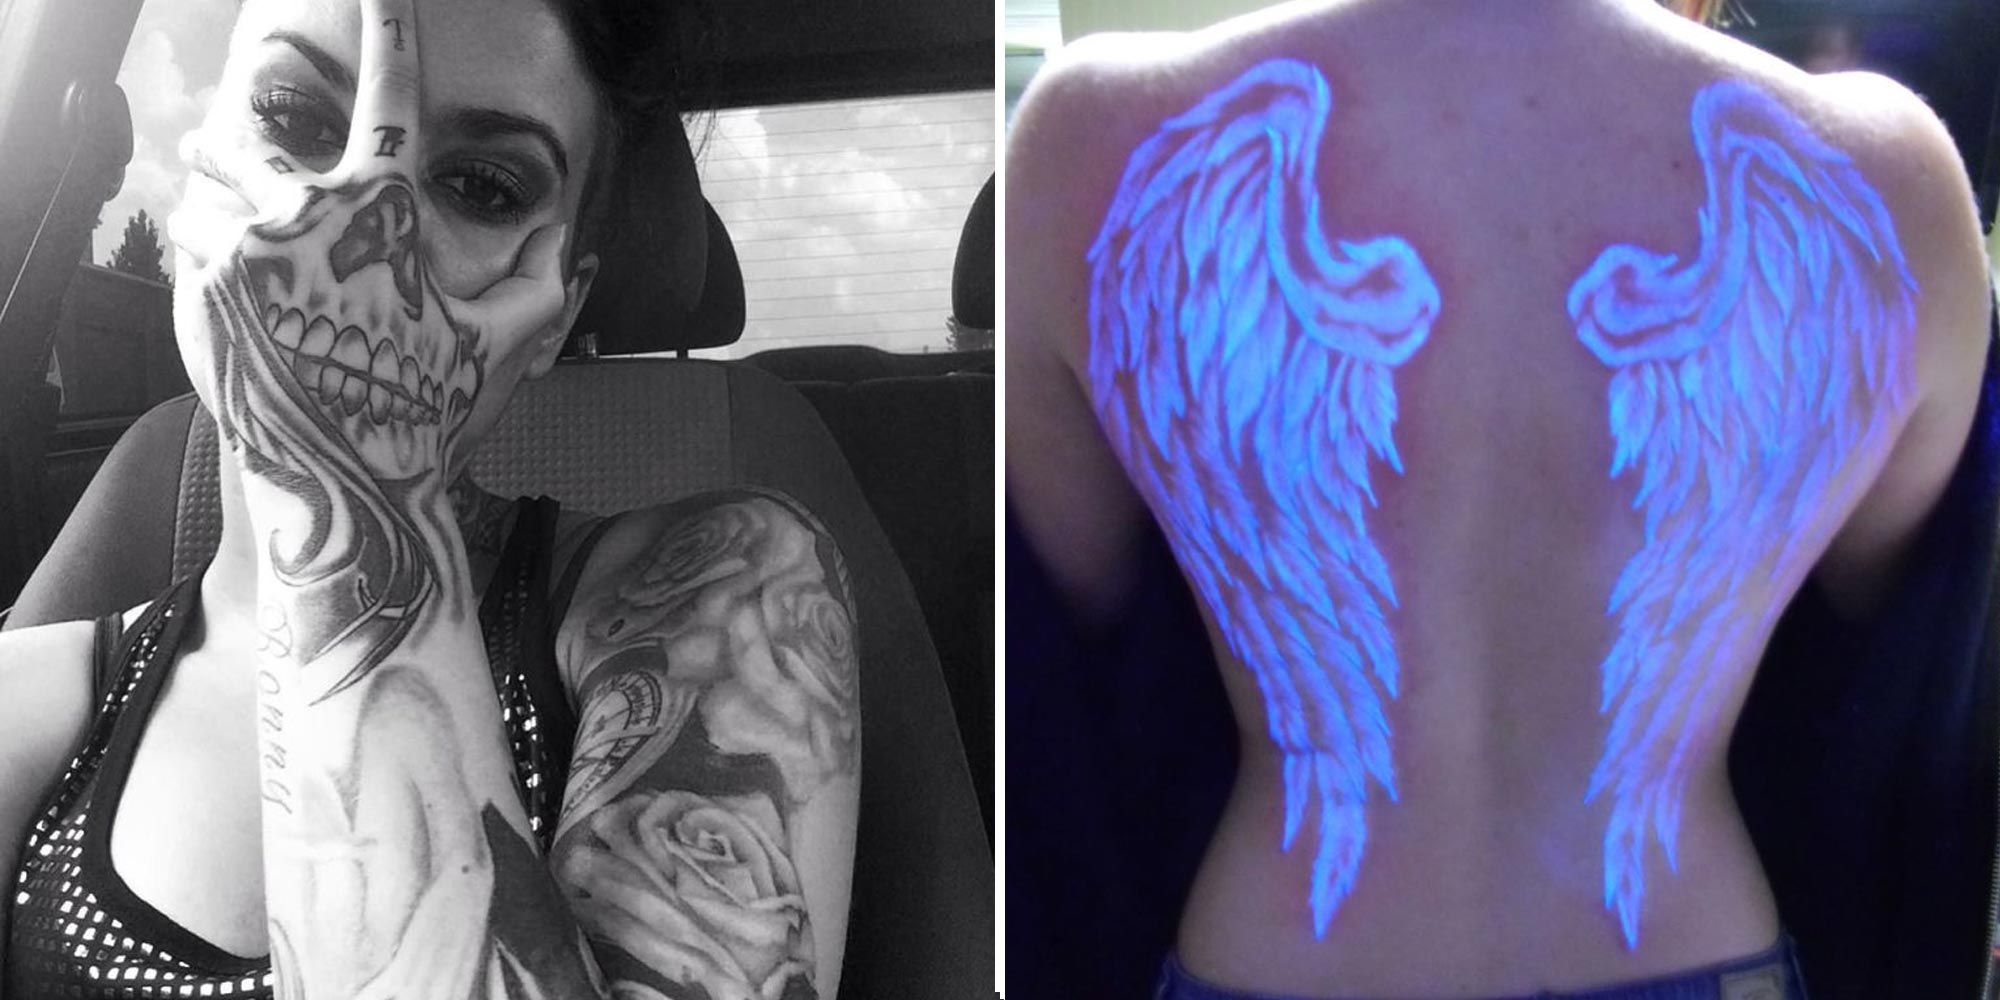 Tarun Name hidden in bird... - Skin Machine Tattoo Studio | Facebook